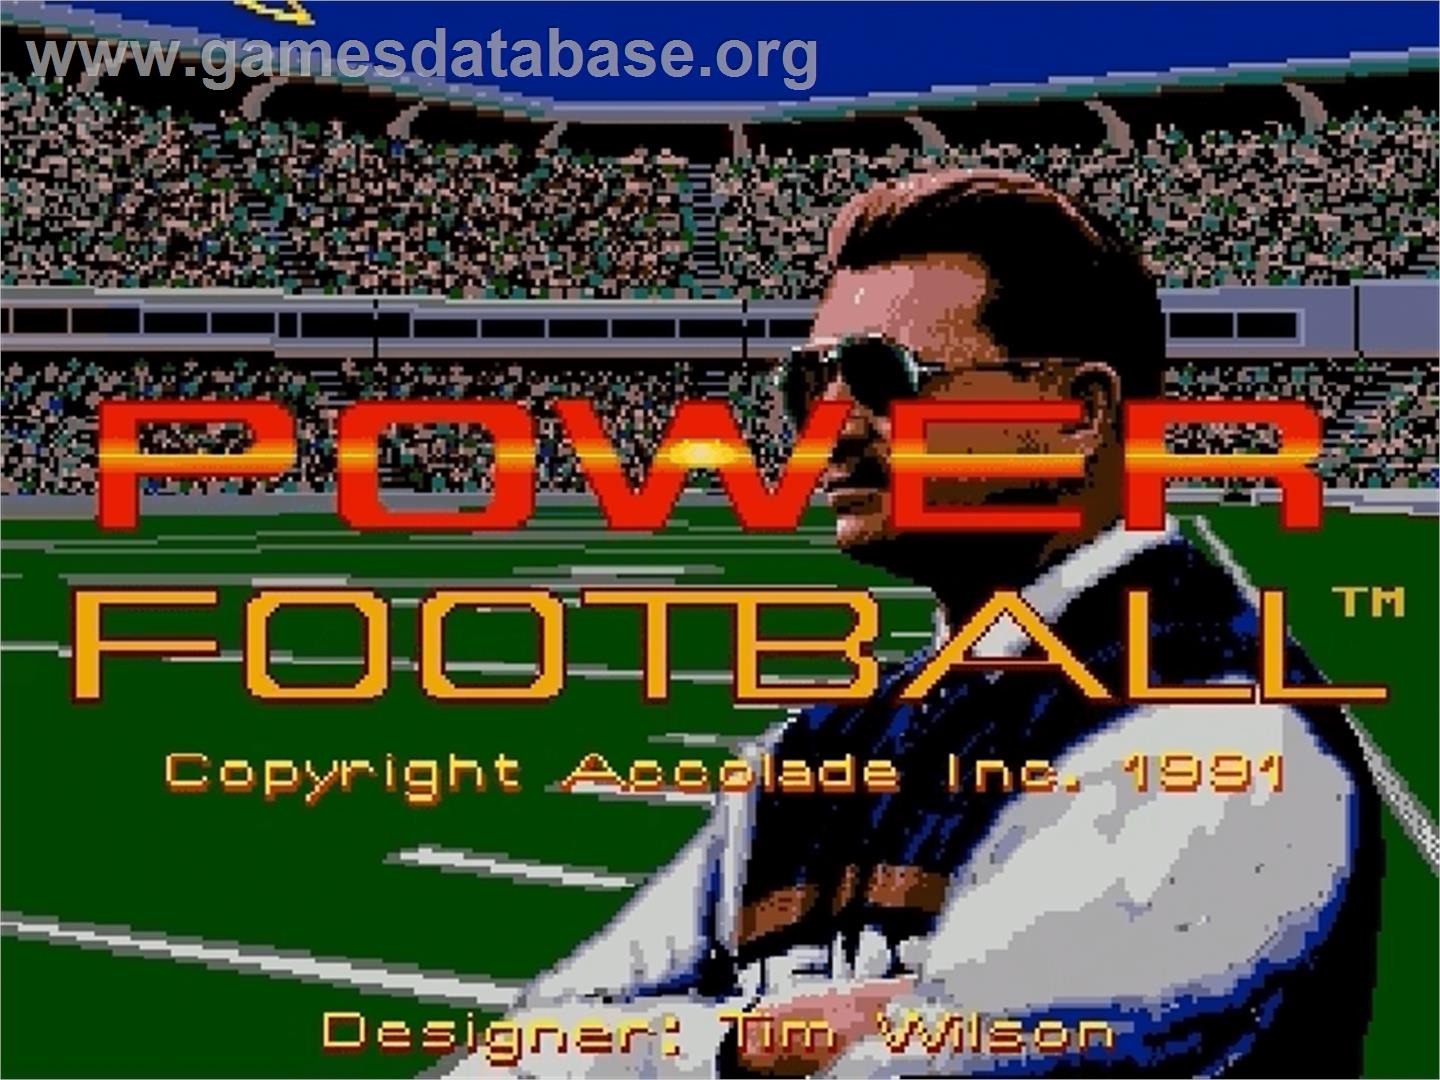 Mike Ditka Power Football - Sega Genesis - Artwork - Title Screen